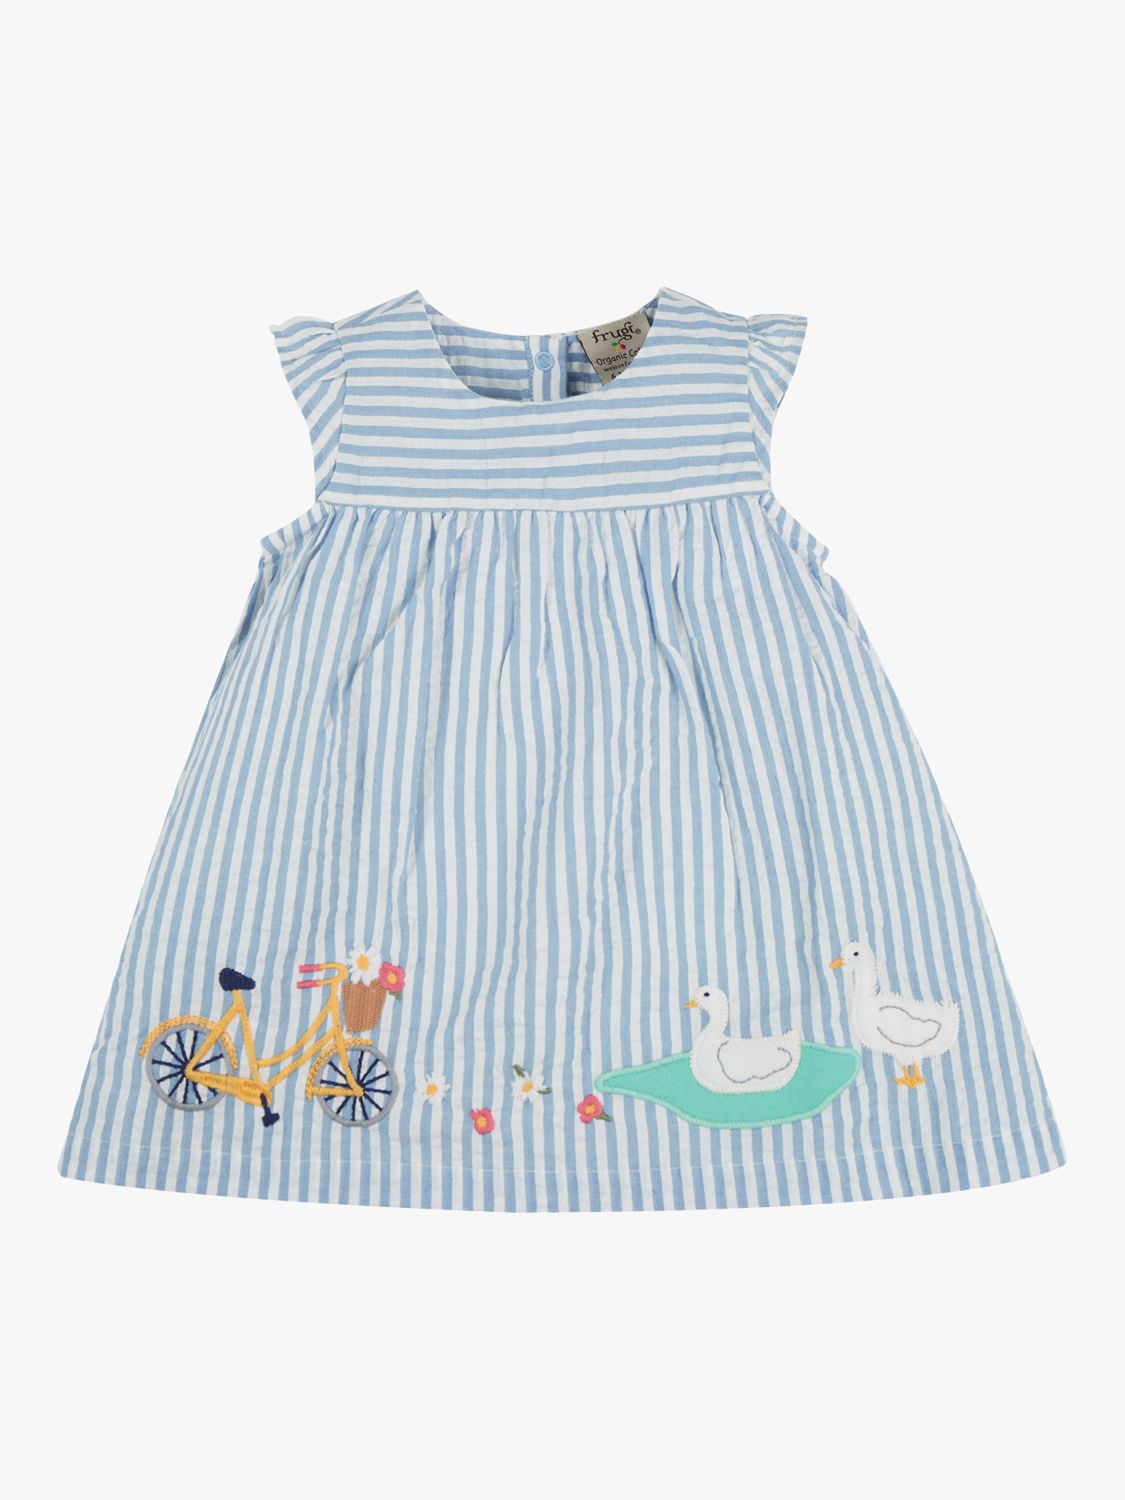 Frugi Baby Birdie Body Organic Cotton Dress, Beach Hut Blue/Multi, 0-3 months